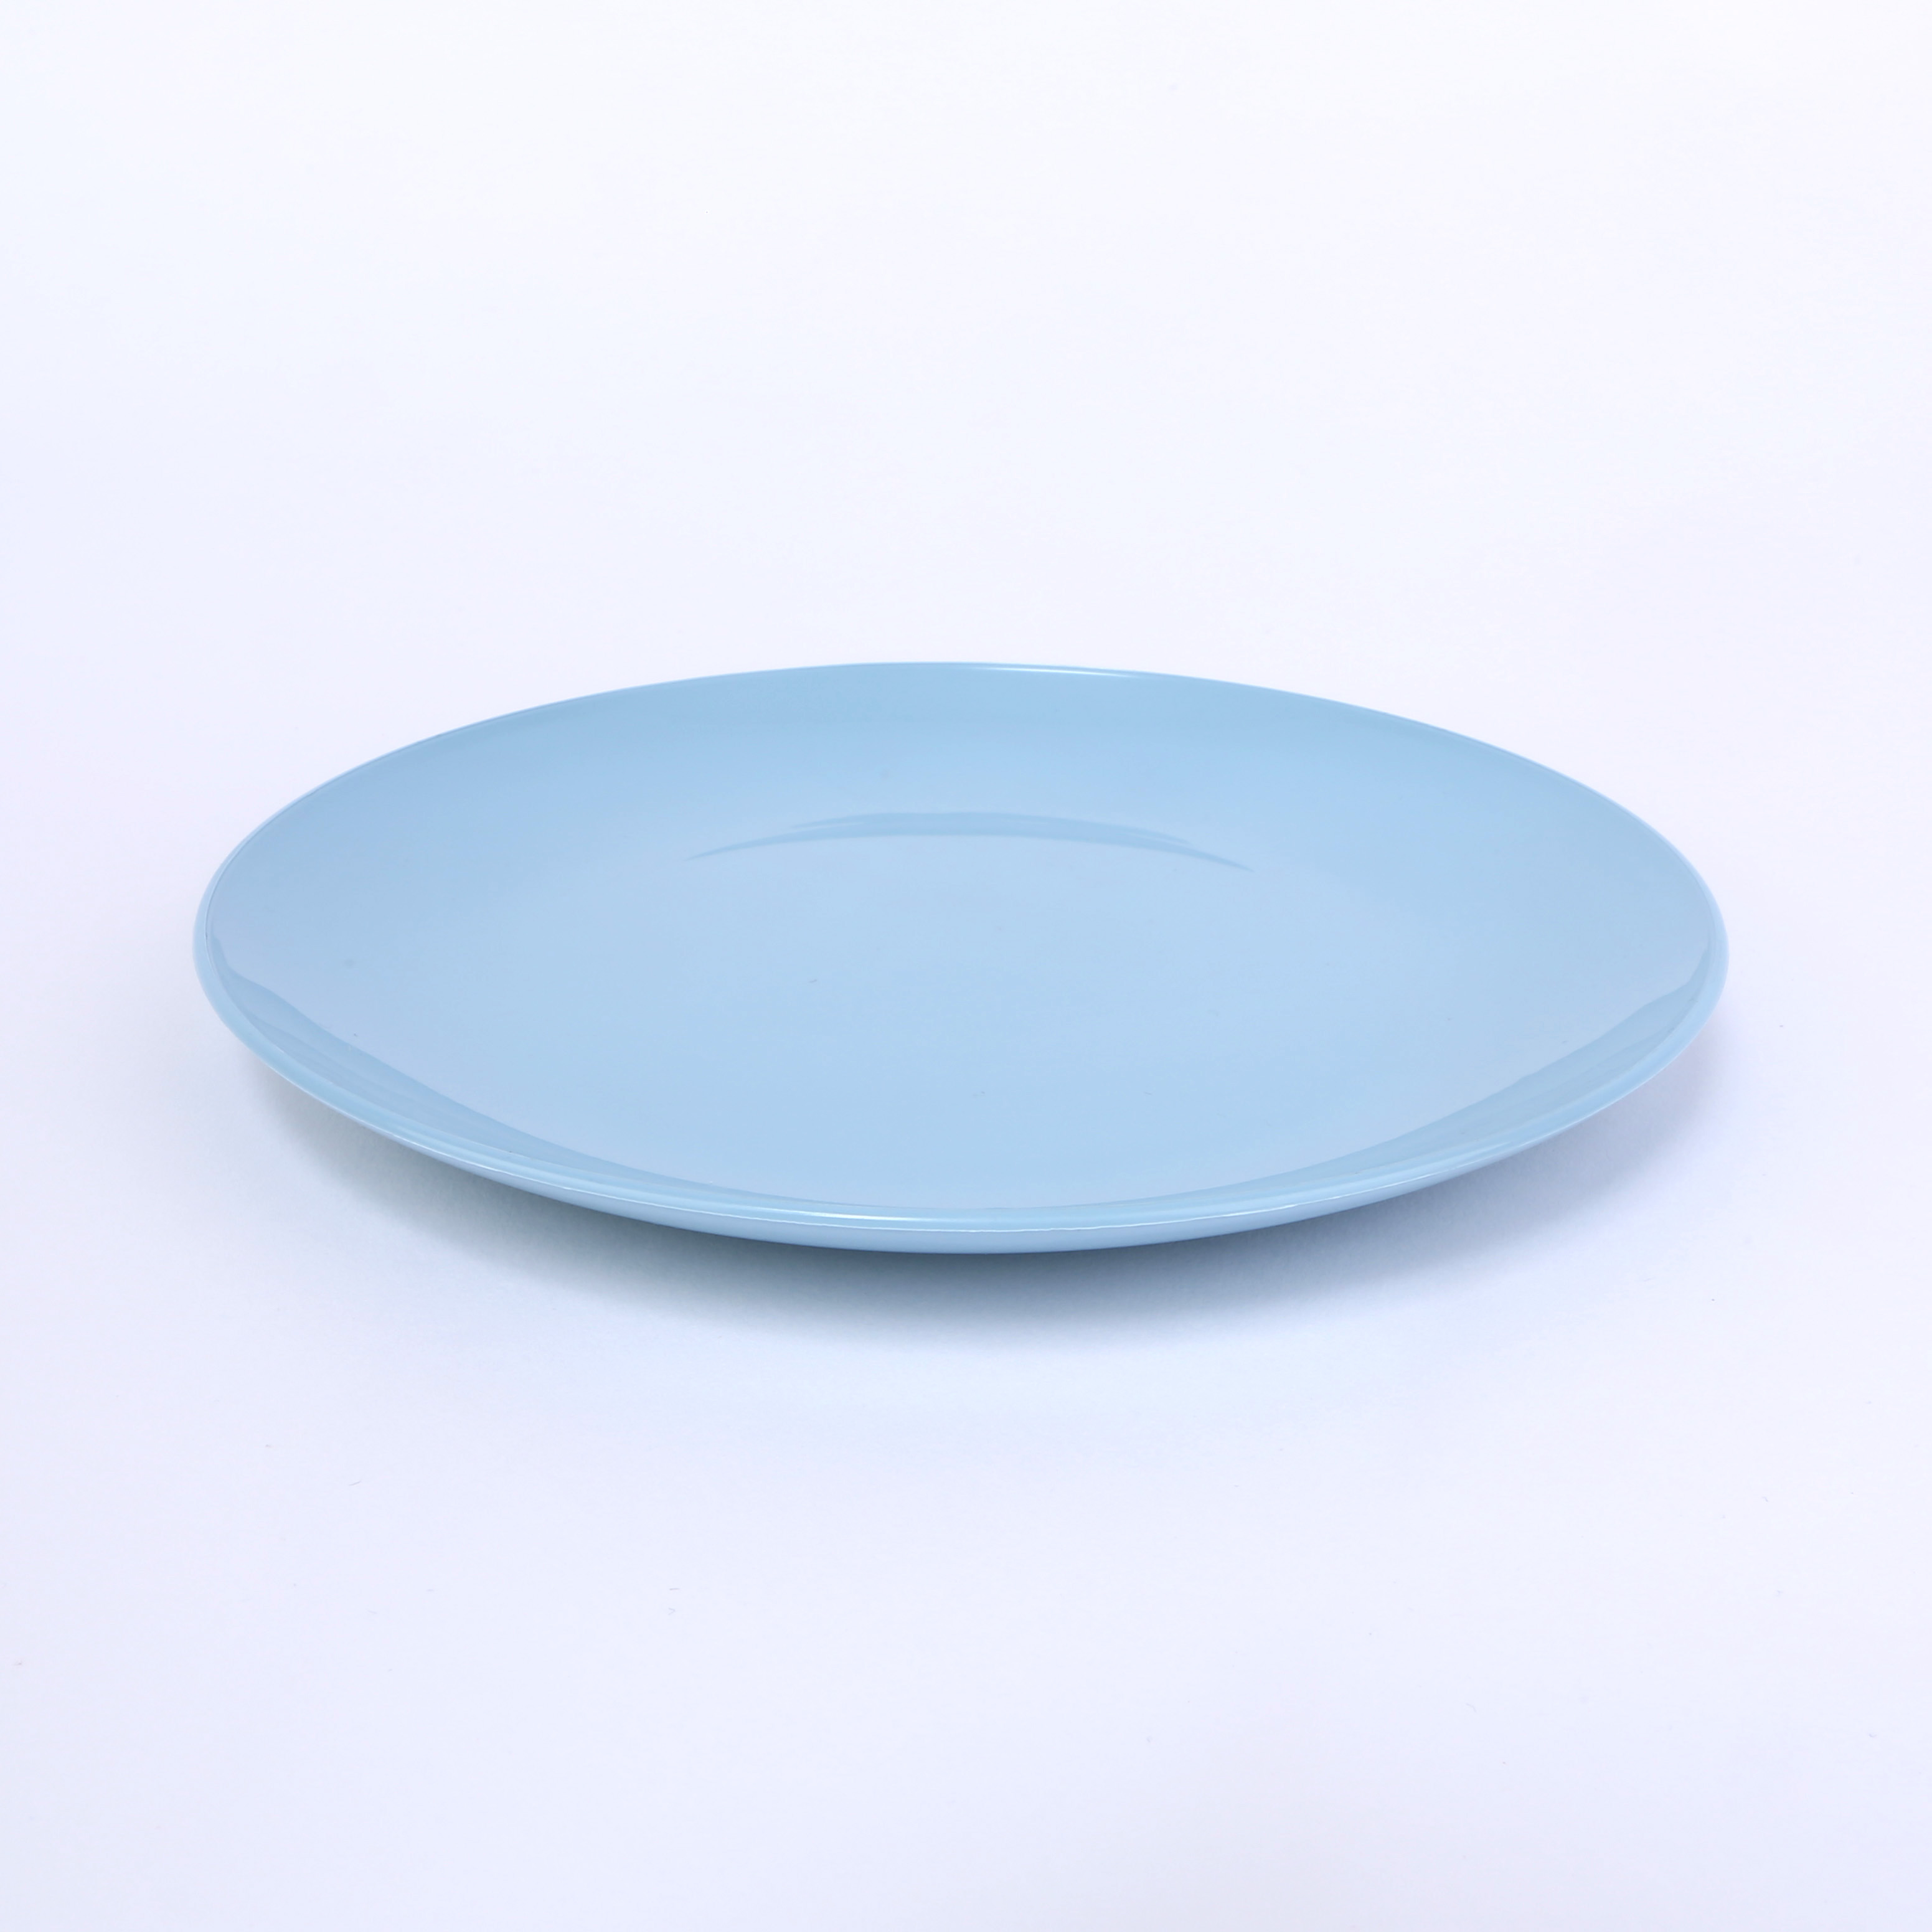 vaLon Zephyr Dessertteller 19 cm aus Kunststoff in der Farbe pastellblau.